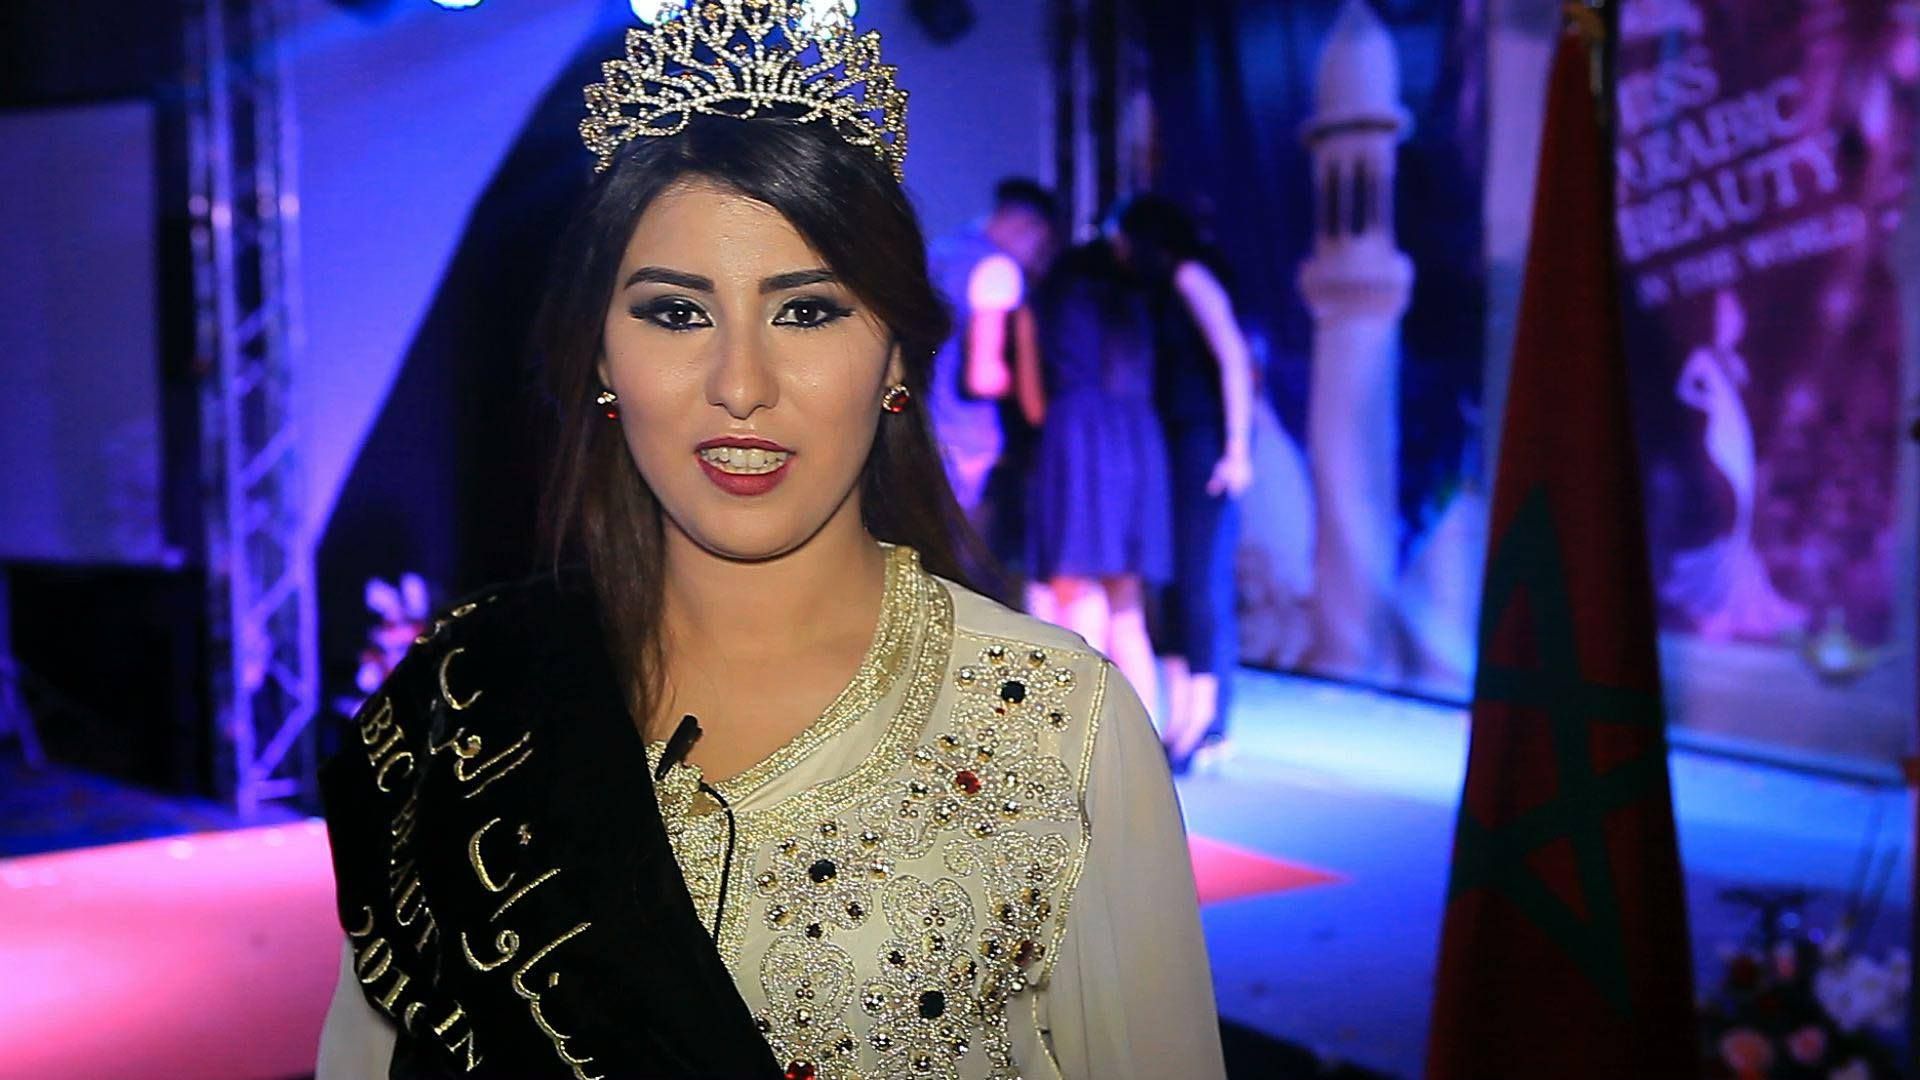 ملكة حسنوات العرب يذهب إلى المغربية ”نجلاء العمراني”